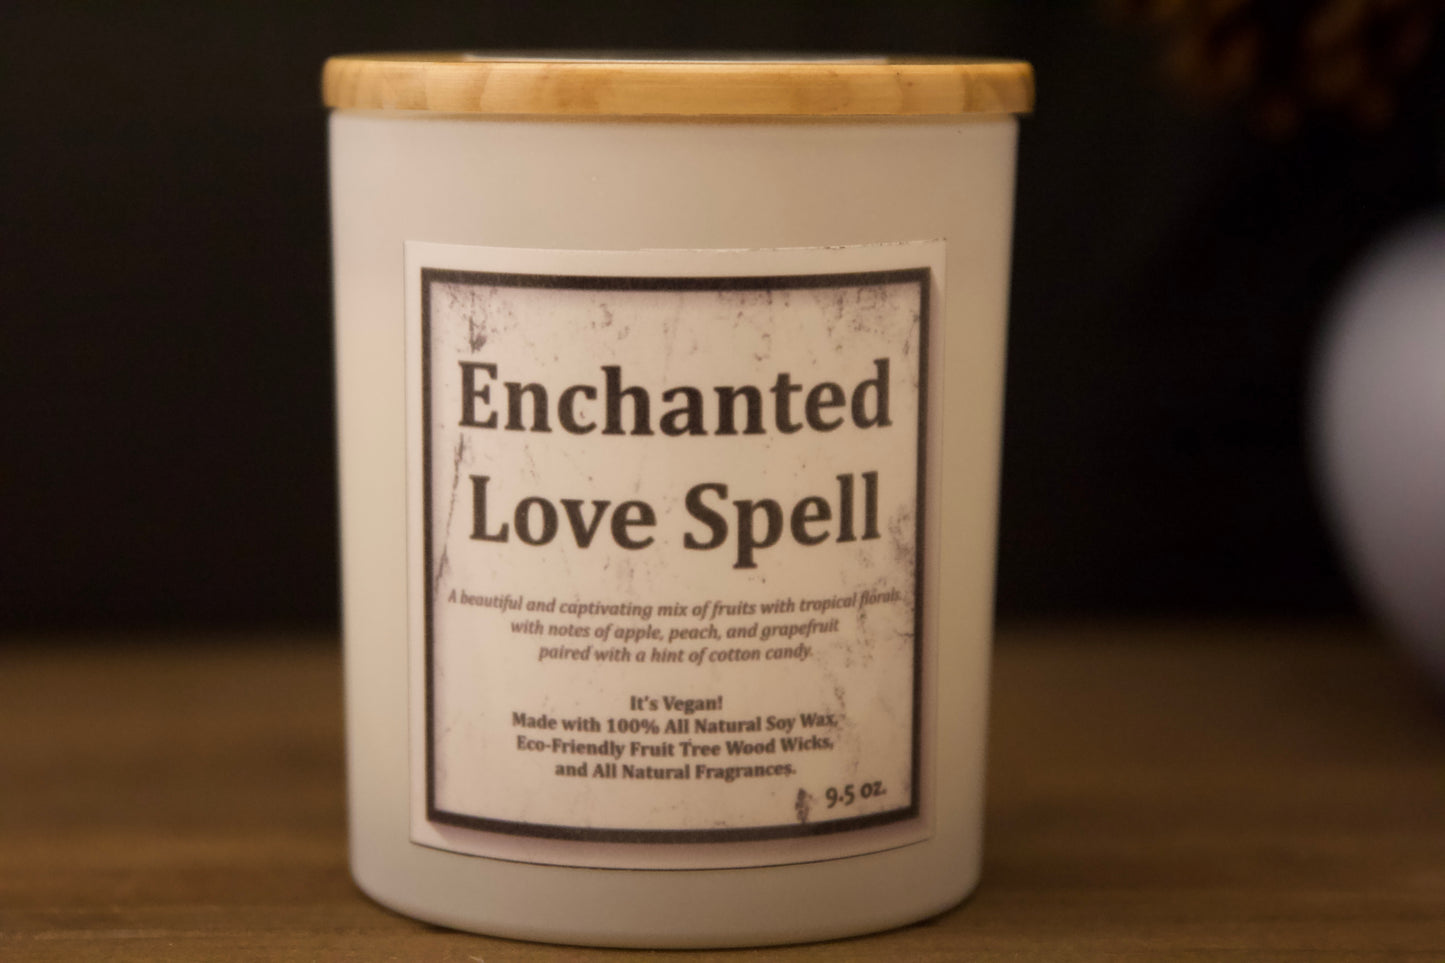 Enchanted Love Spell